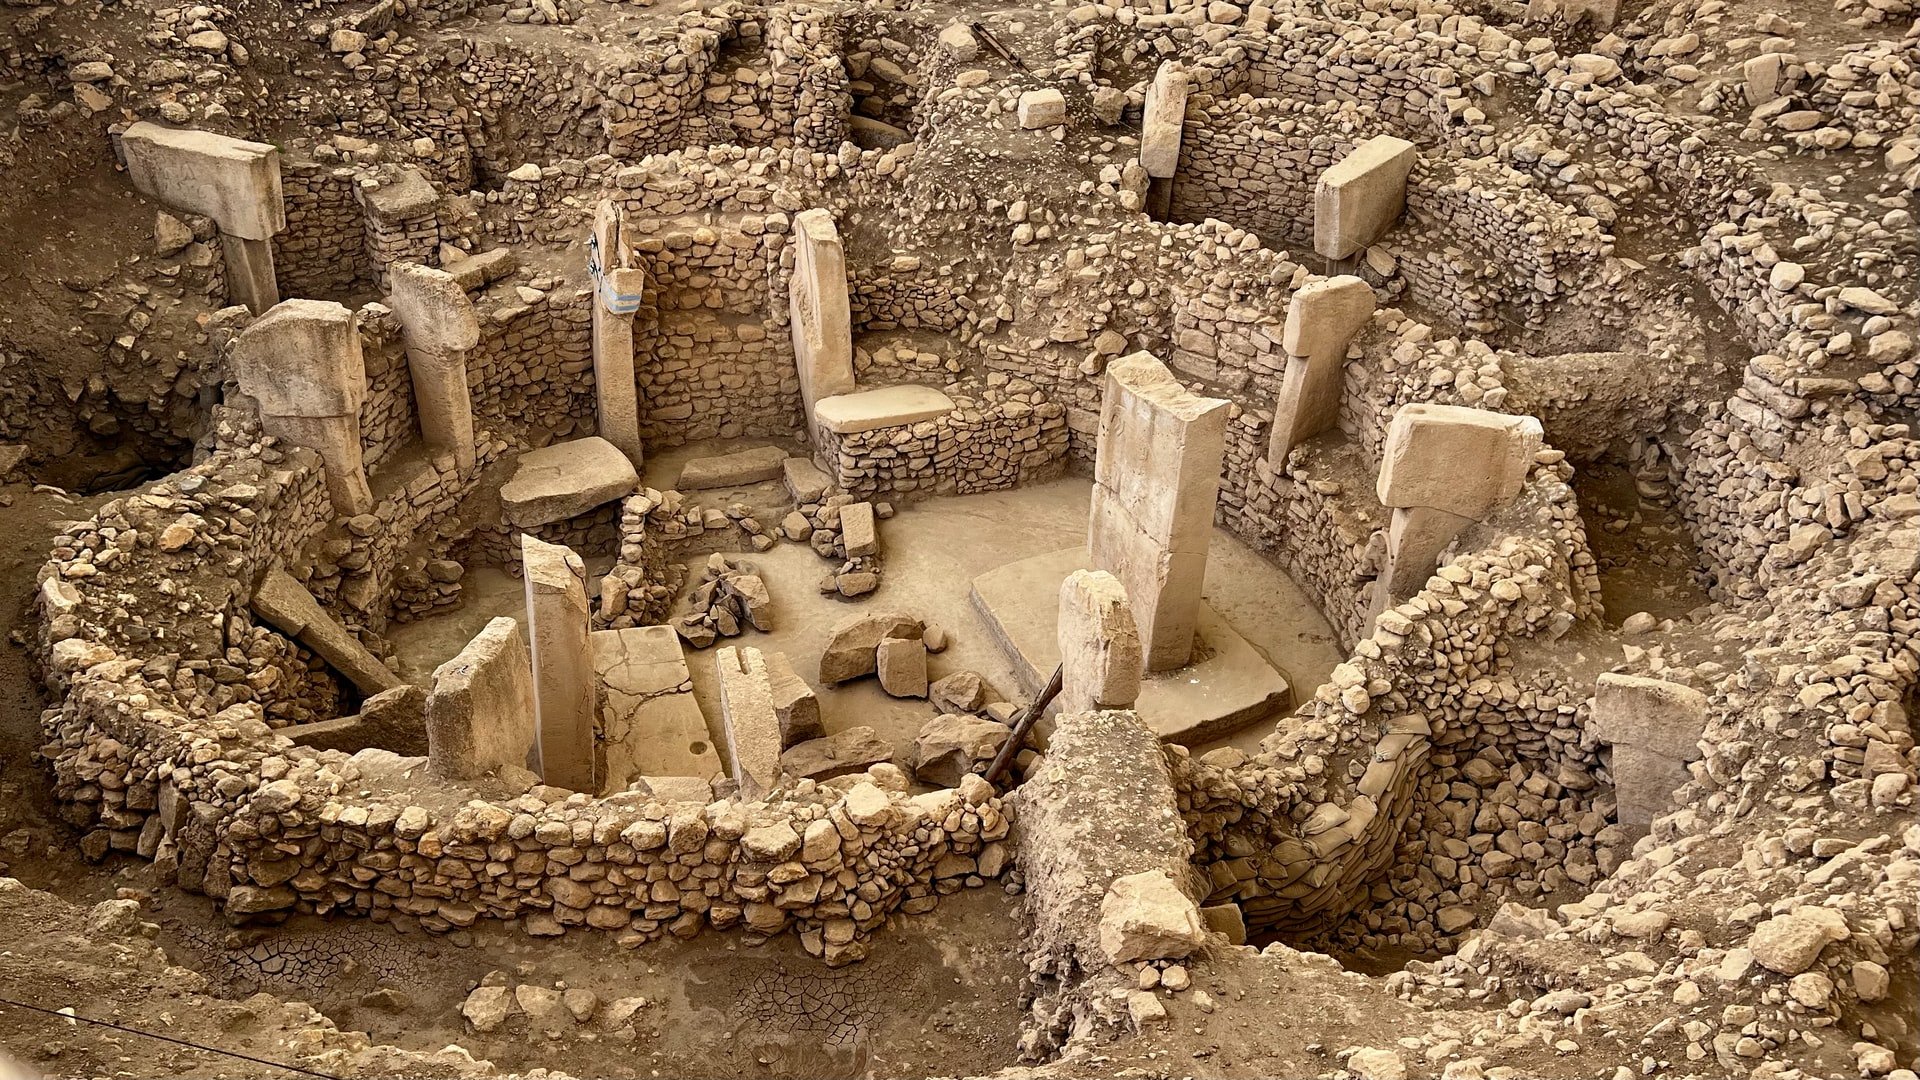 Această imagine arată ruinele antice din Gobekli Tepe, unul dintre siturile istorice mai puțin cunoscute din Turcia.